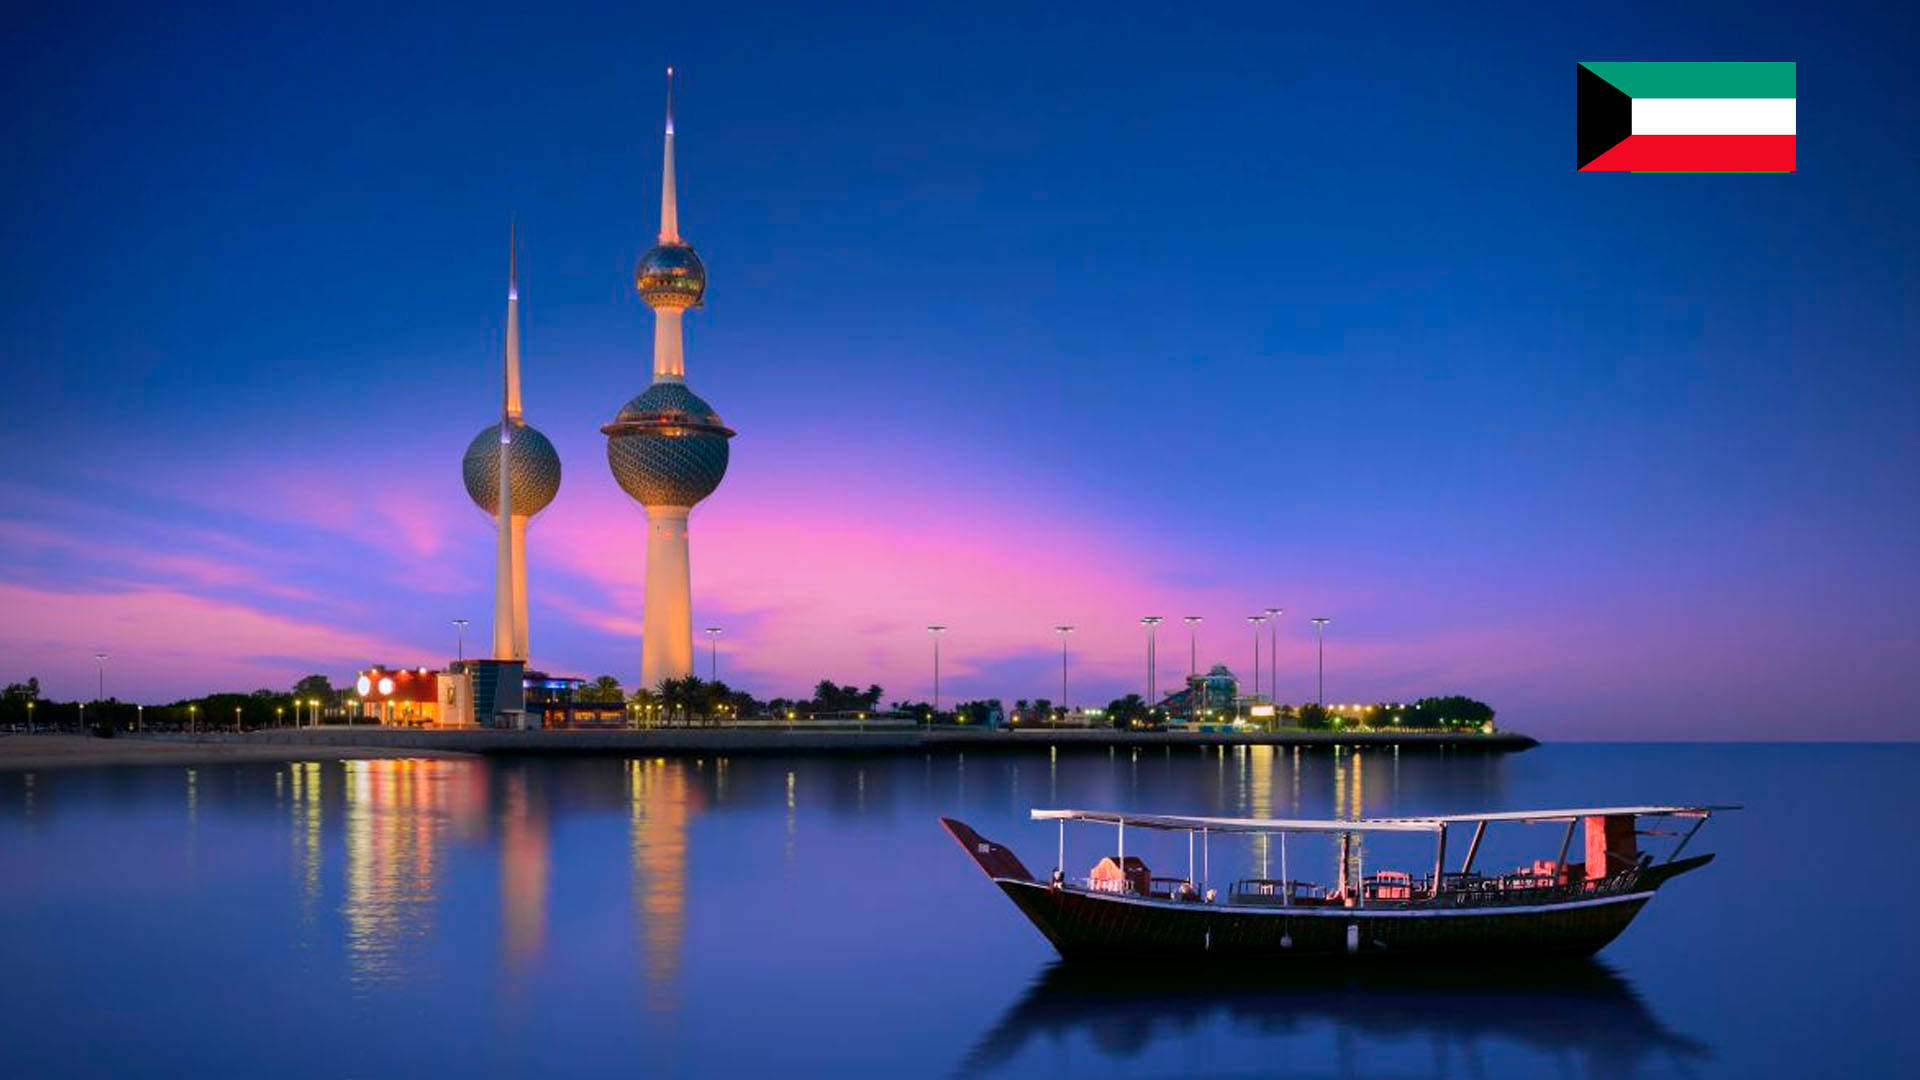 Kuwait Towers - Iconic Landmark Against The Stunning Seaside Backdrop Background